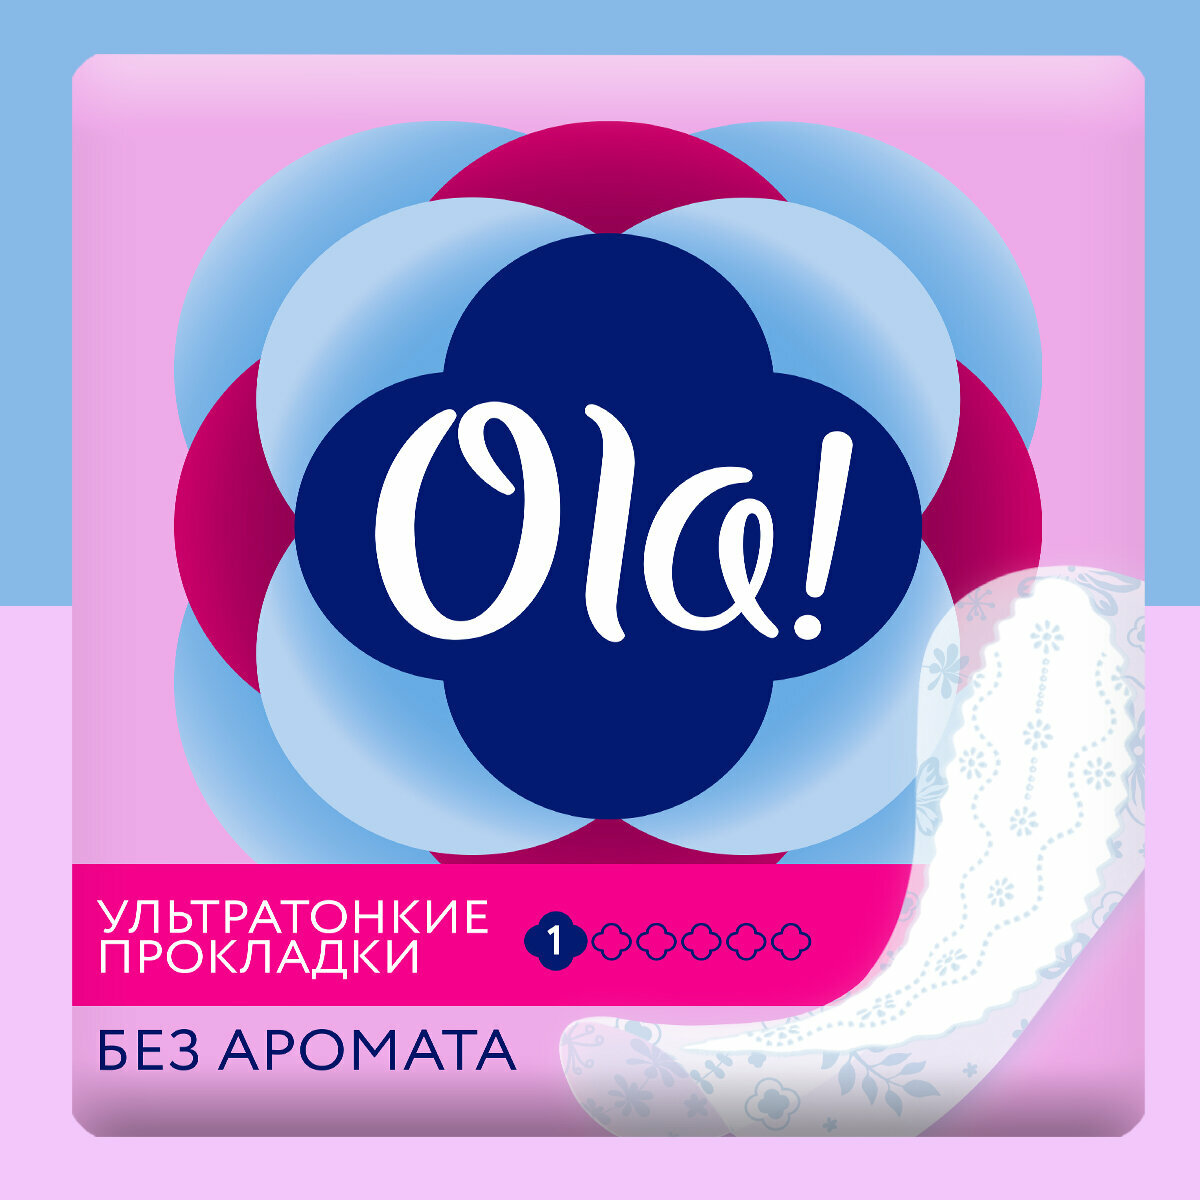 Ежедневные прокладки мультиформ Ola! Light без аромата 60 шт.